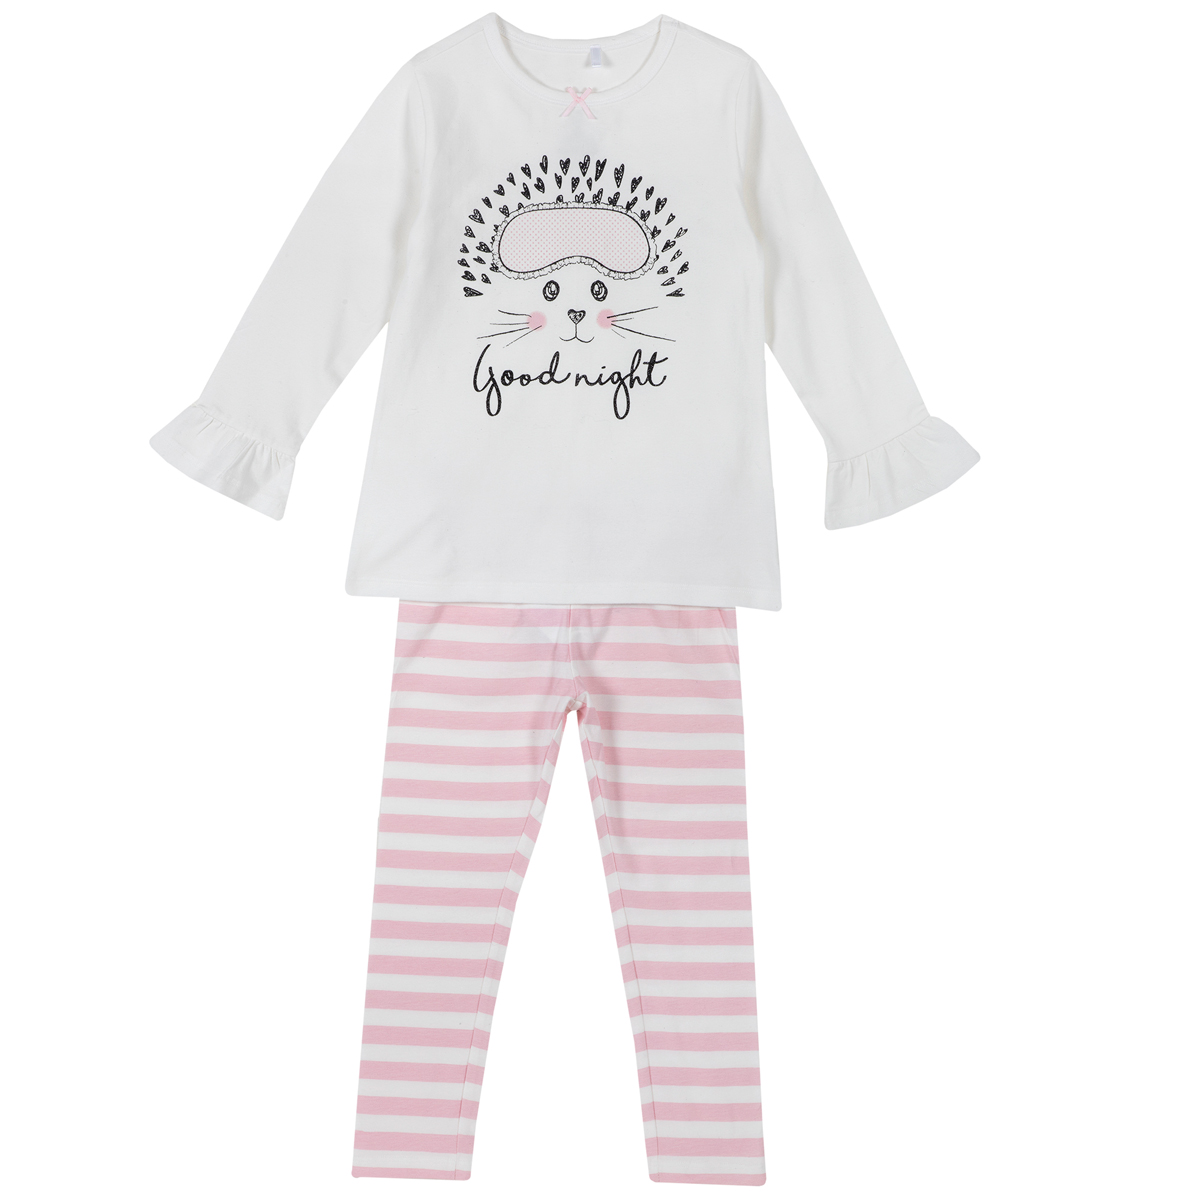 Pijama copii Chicco, maneca lunga, alb cu roz, 31269